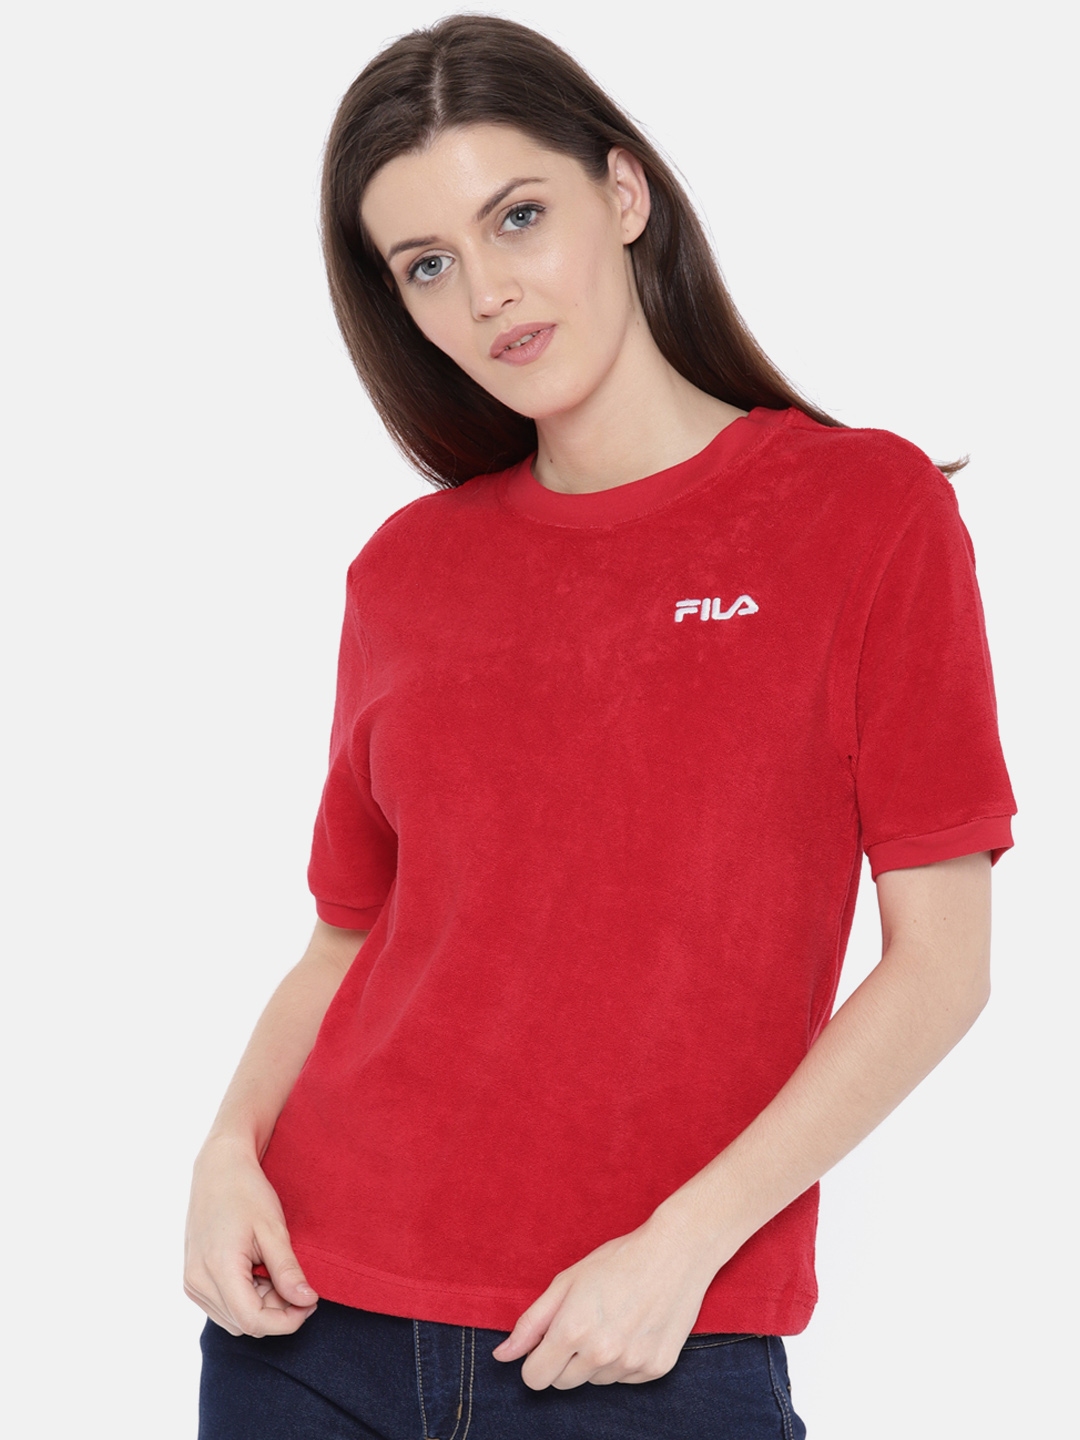 red fila t shirt women's